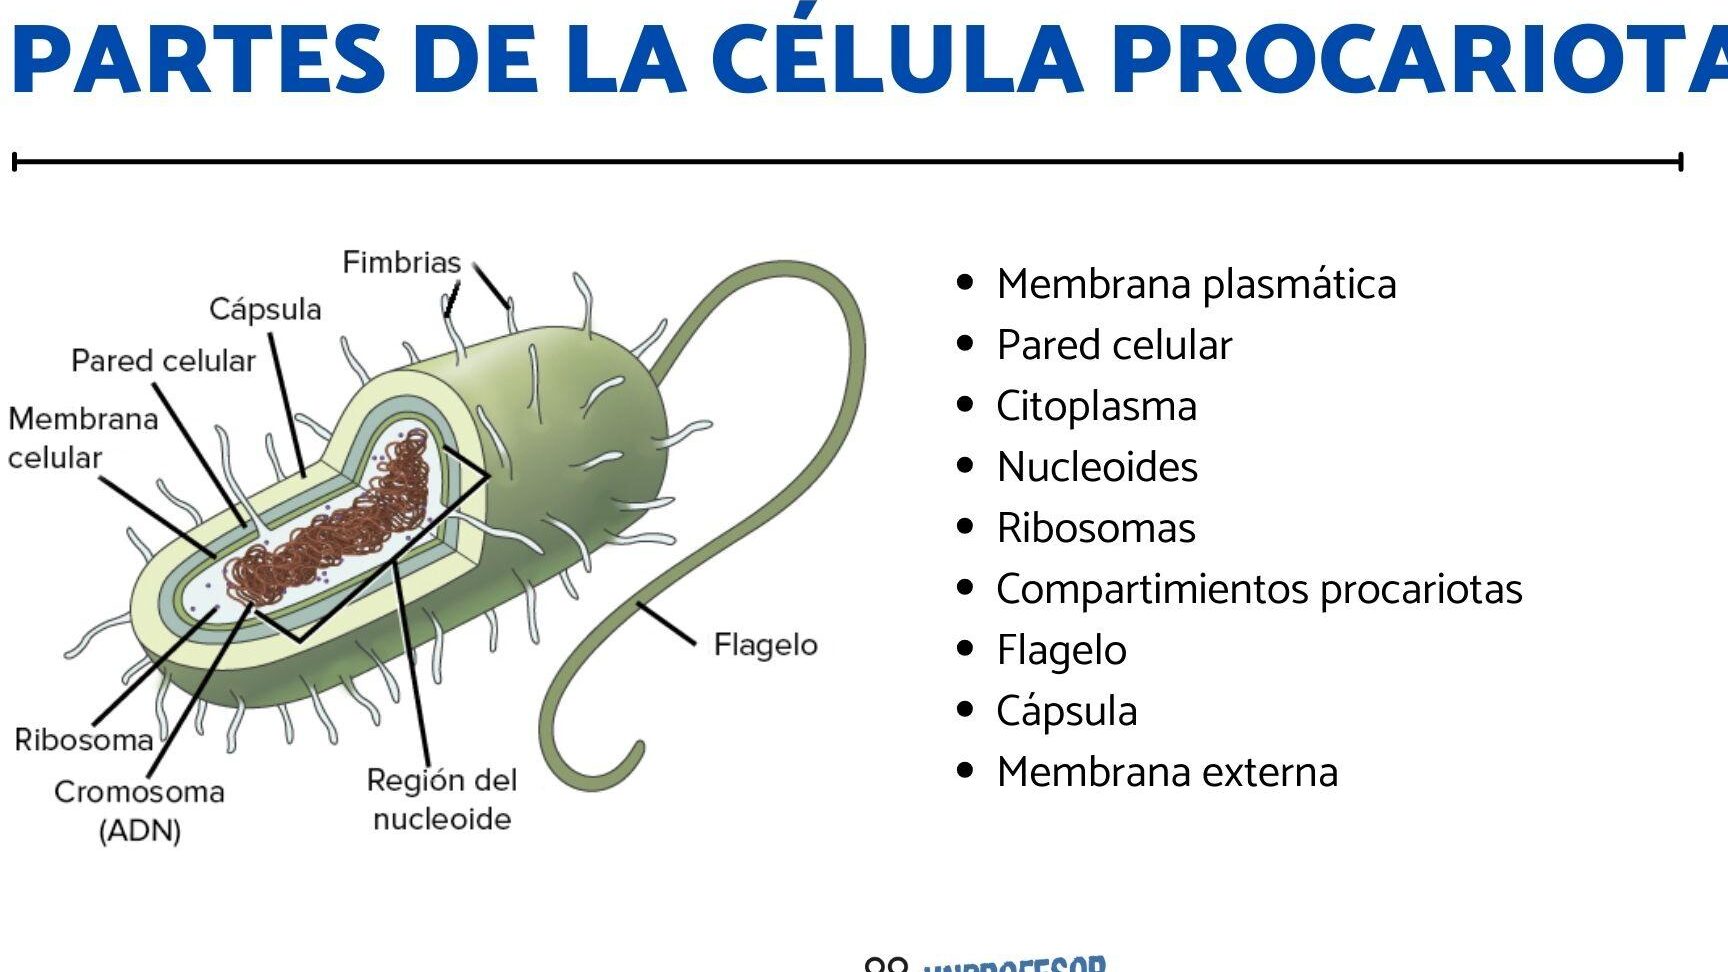 La verdad sobre las células procariotas: ¿Cuál afirmación es cierta?